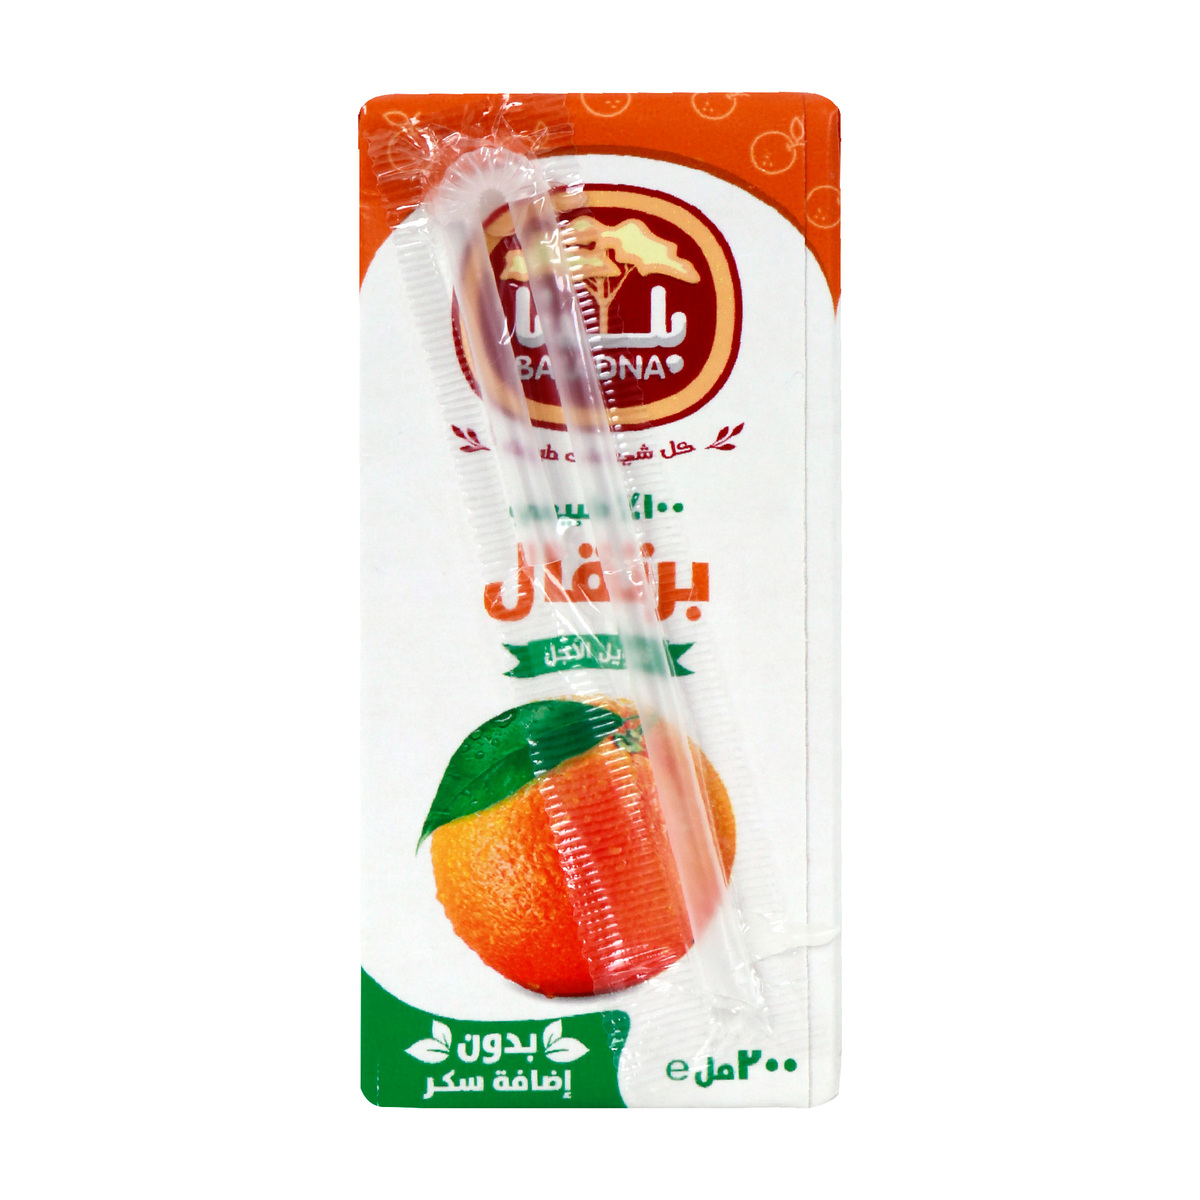 Baladna Juice Orange 200ml